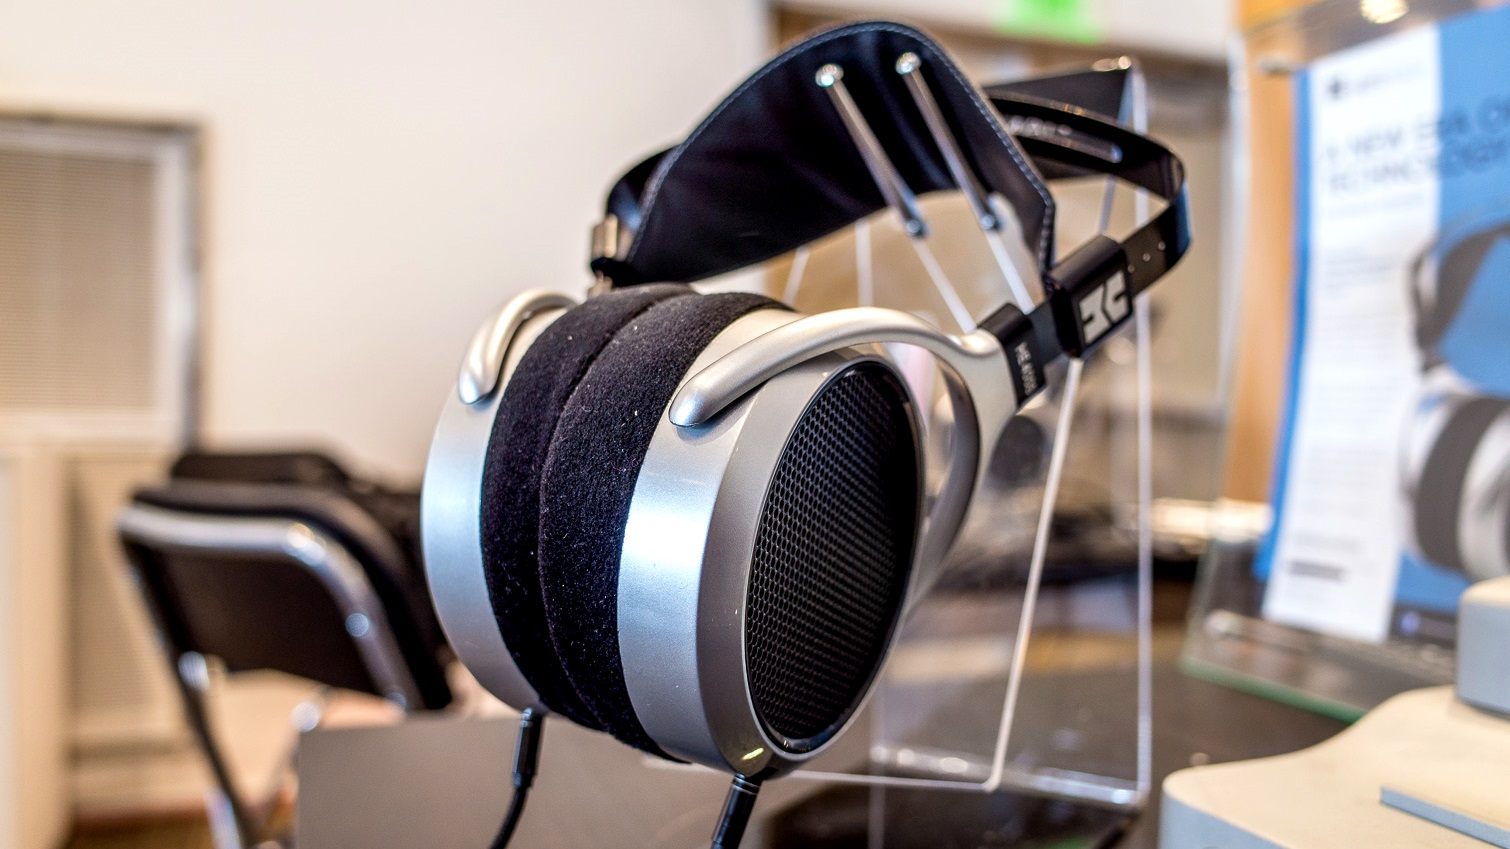 HiFiMan giới thiệu tai nghe từ phẳng HE400s giá 300 USD